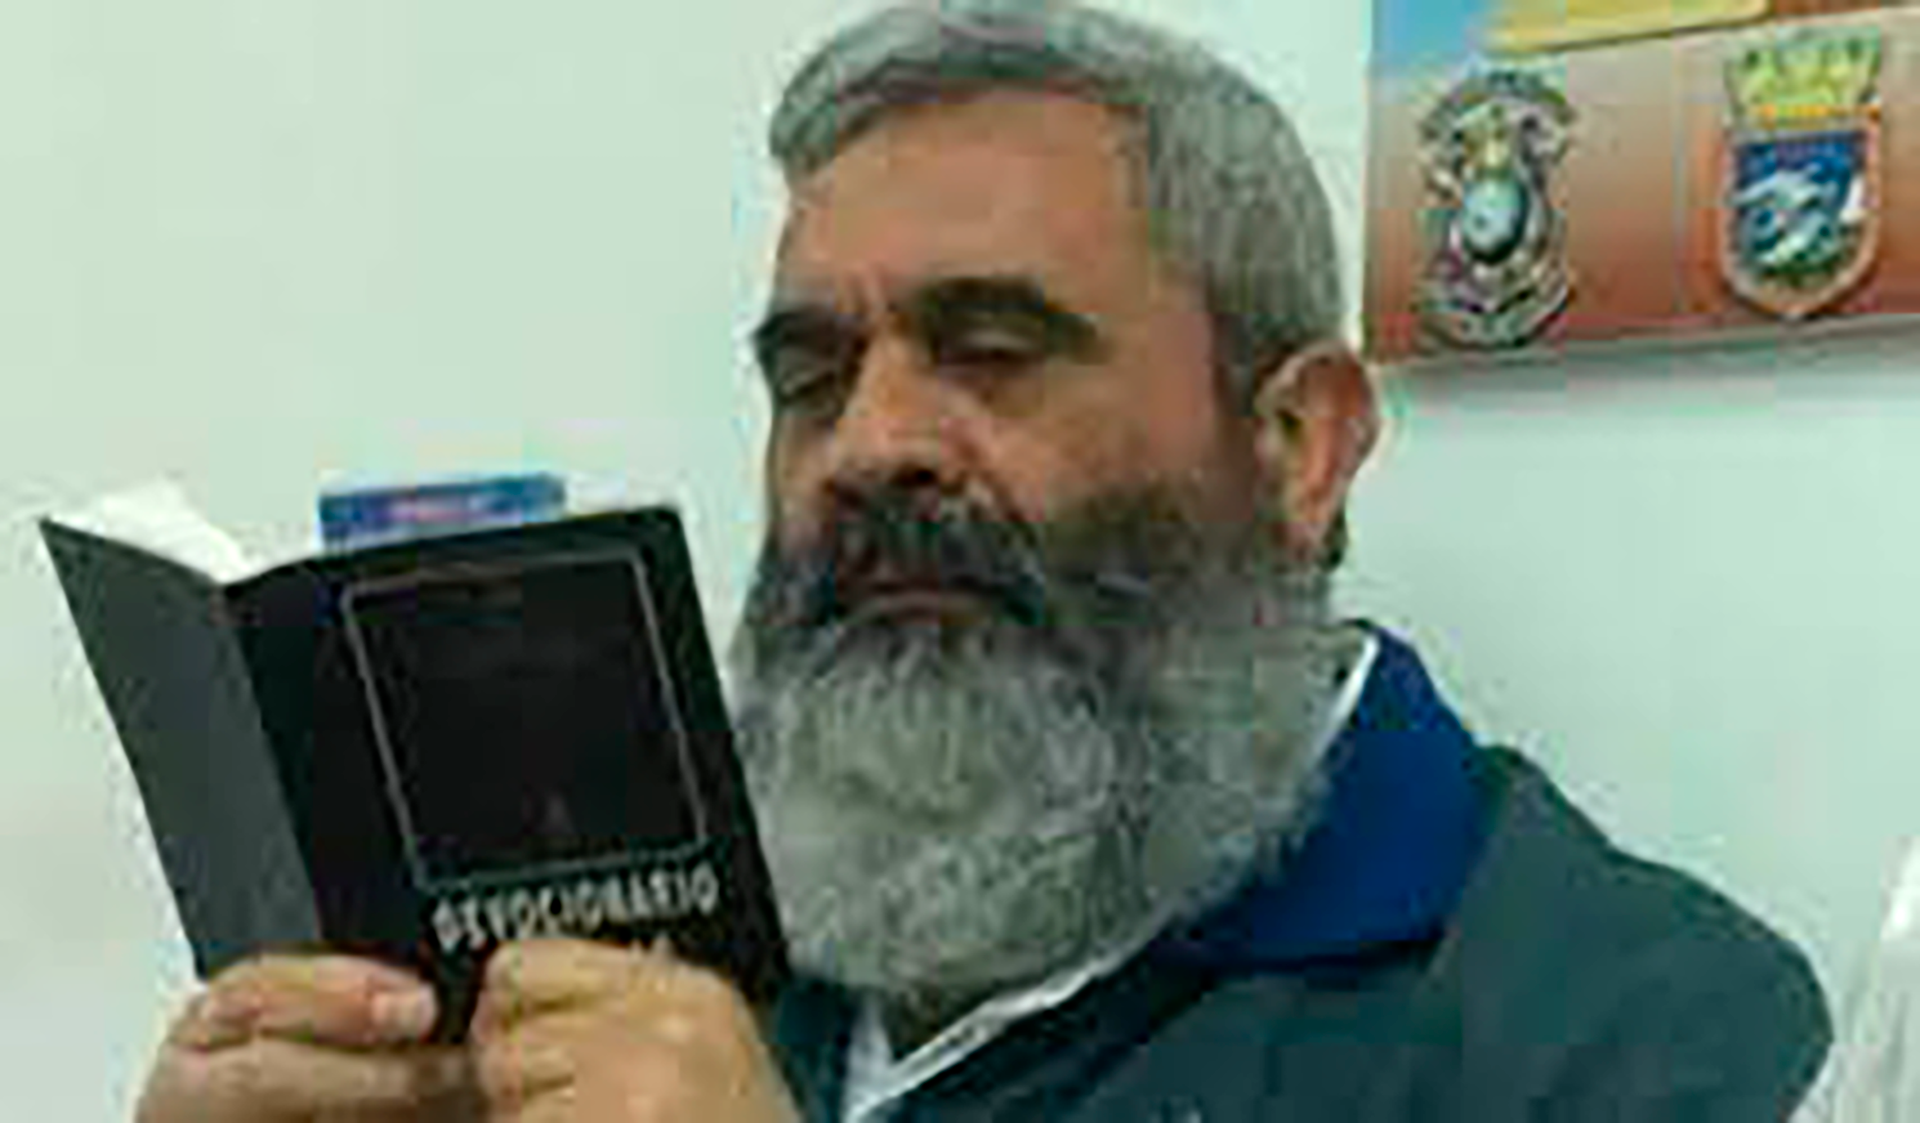 El General en Jefe del Ejército retirado Raúl Isaías Baduel murió en prisión y sin juicio